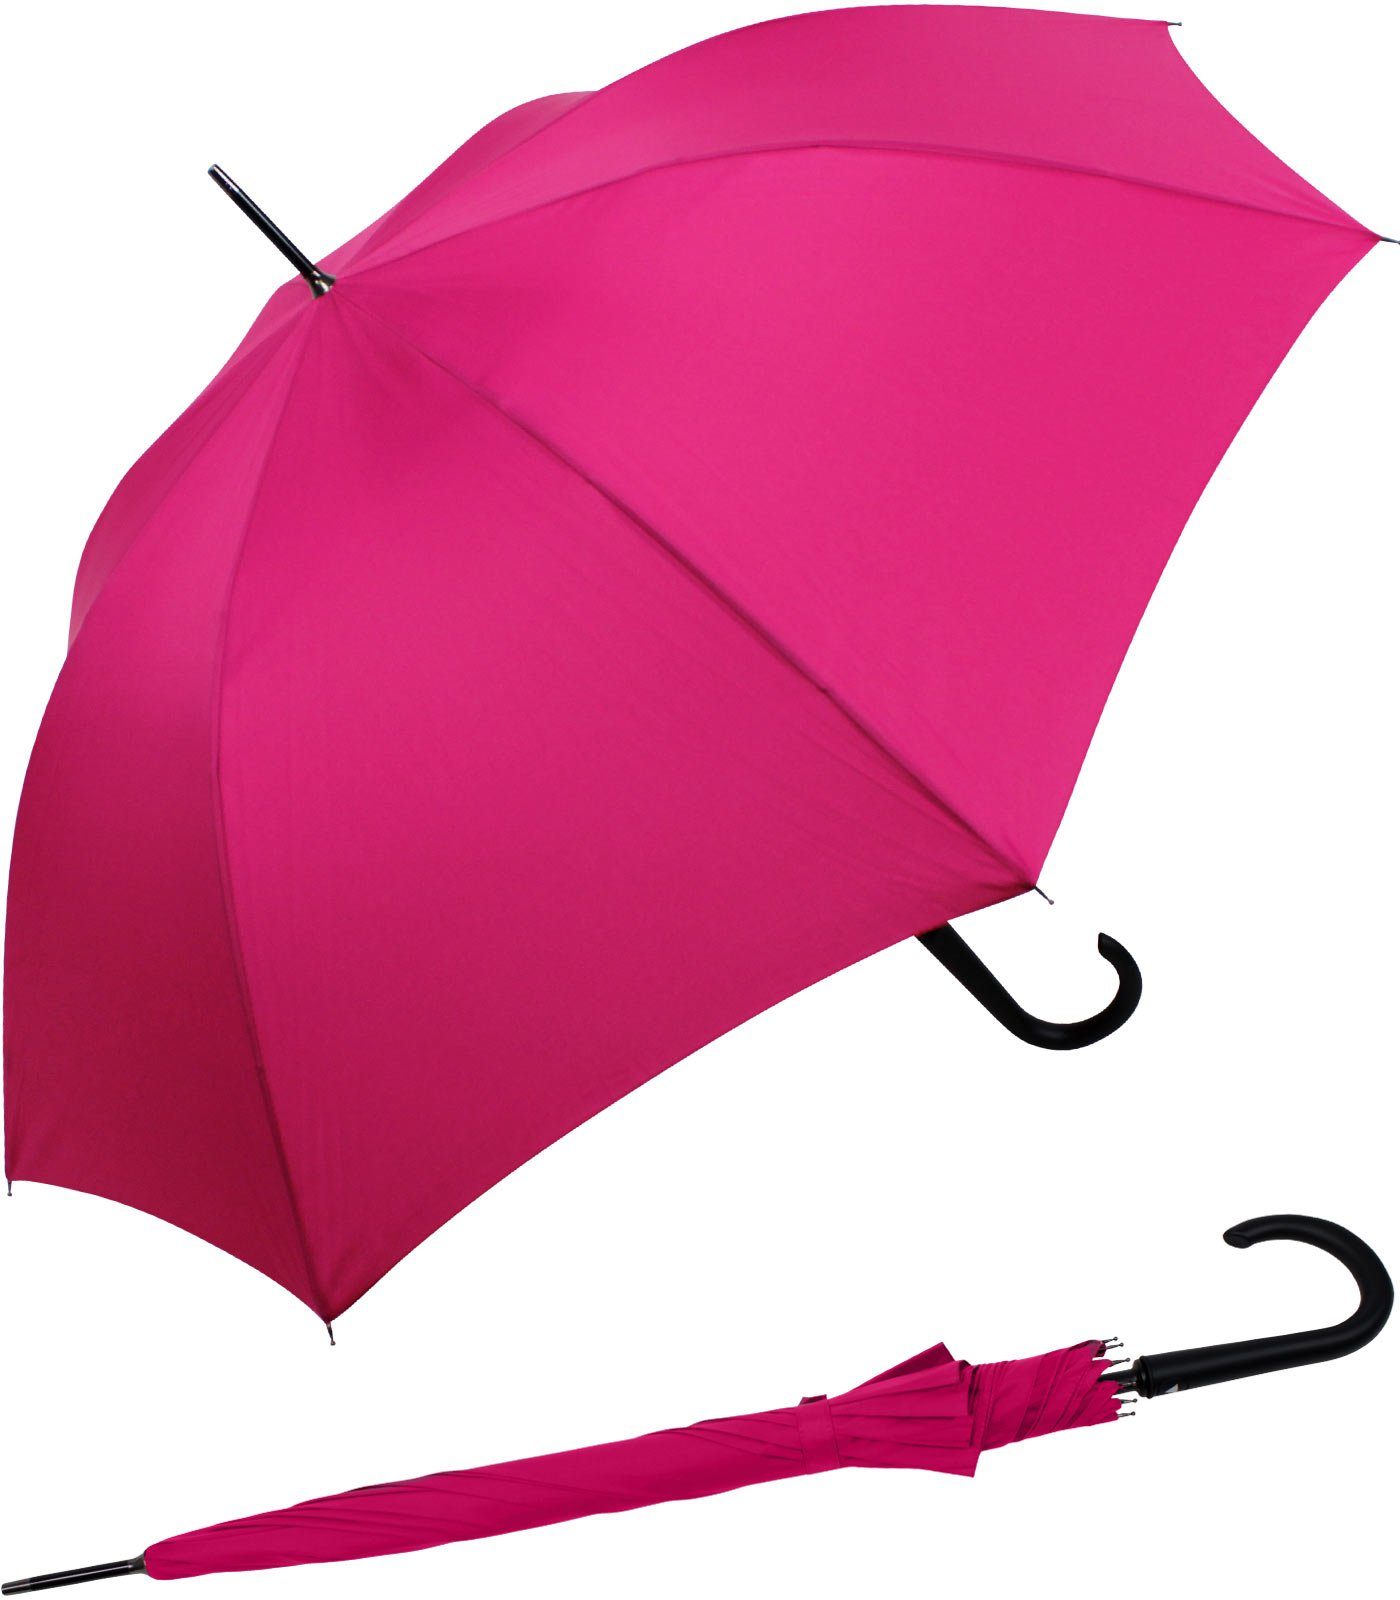 RS-Versand Langregenschirm großer stabiler Regenschirm mit Auf-Automatik, Stahl-Fiberglas-Gestell, integrierter Auslöseknopf pink